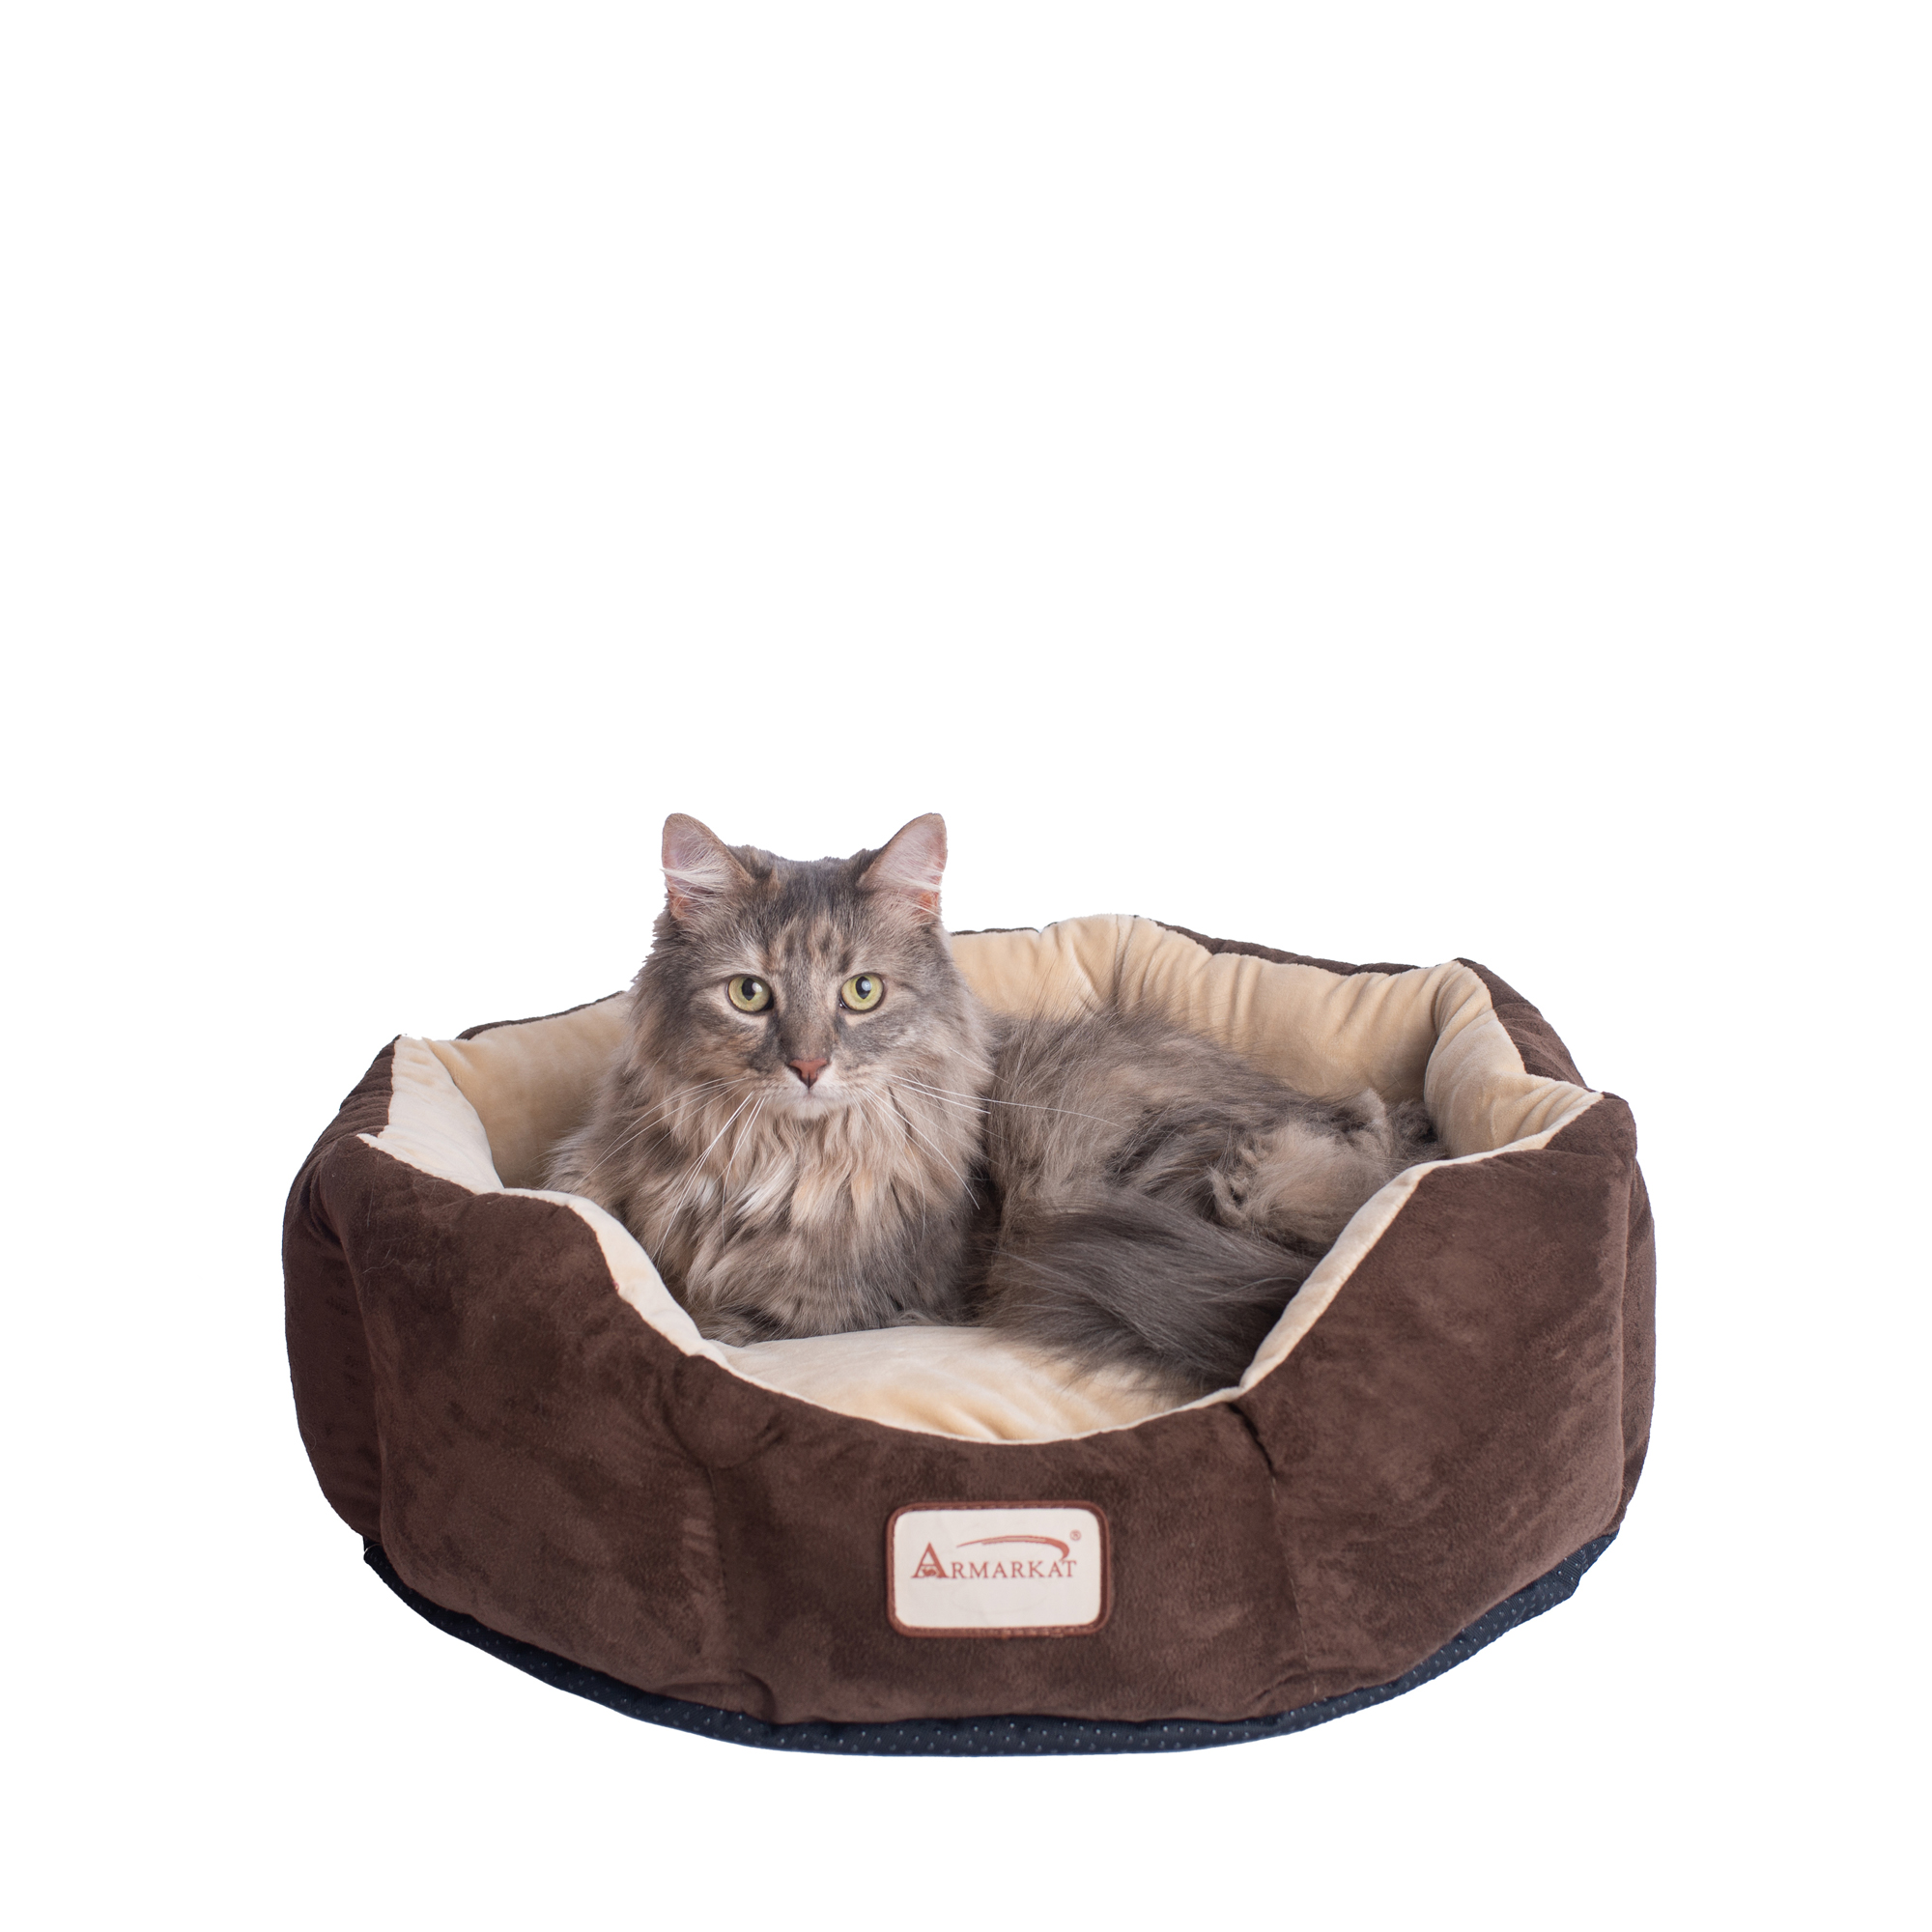 C01hkf-mh Armarkat Pet Bed Cat Bed 20 X 20 X 8 - Mocha & Beige